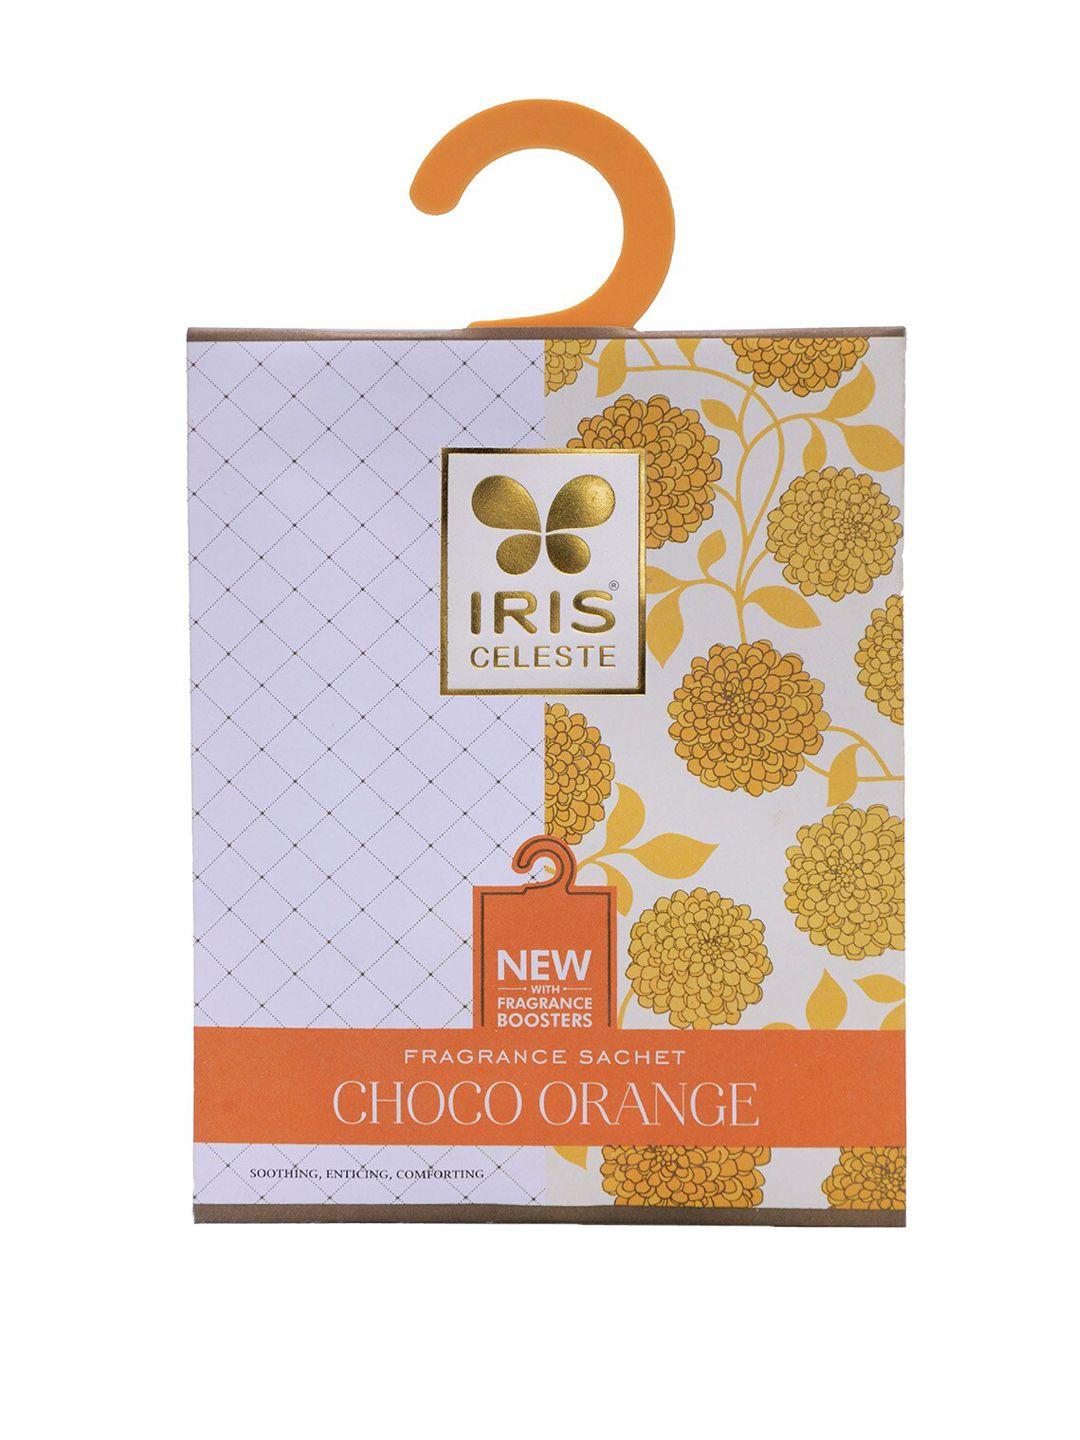 iris celeste white & orange 3 pieces choco orange fragrance sachets